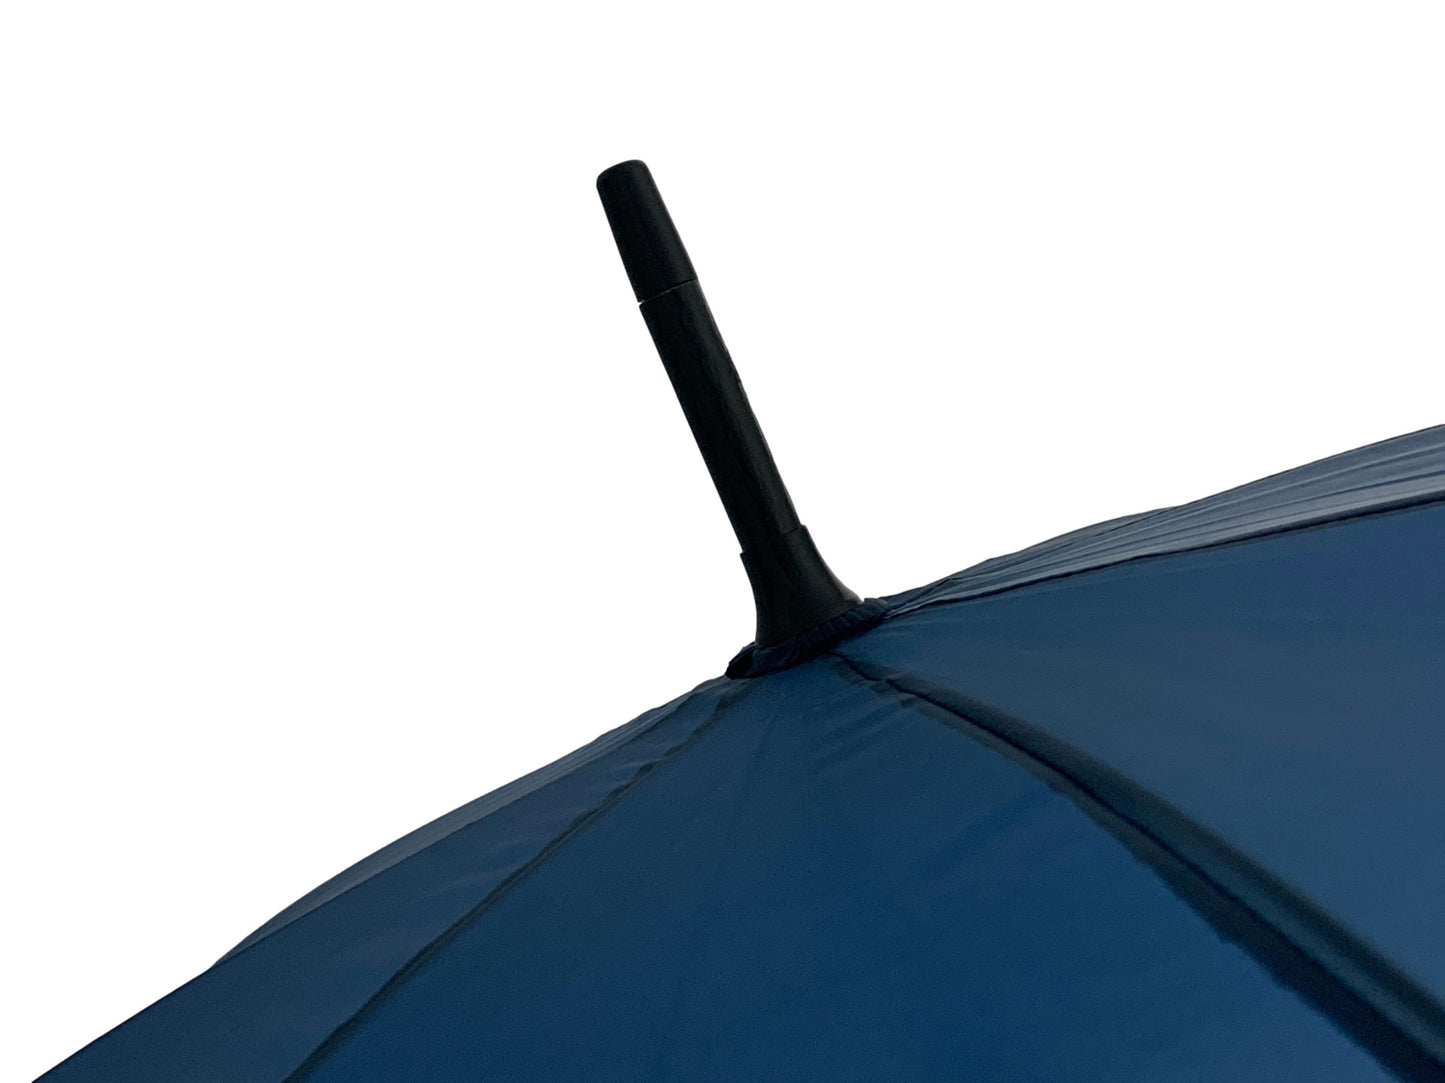 Μπλε Μαρίν Ομπρέλα Βροχής, από αθρακόνημα  (κωδικός 01-03-0528).